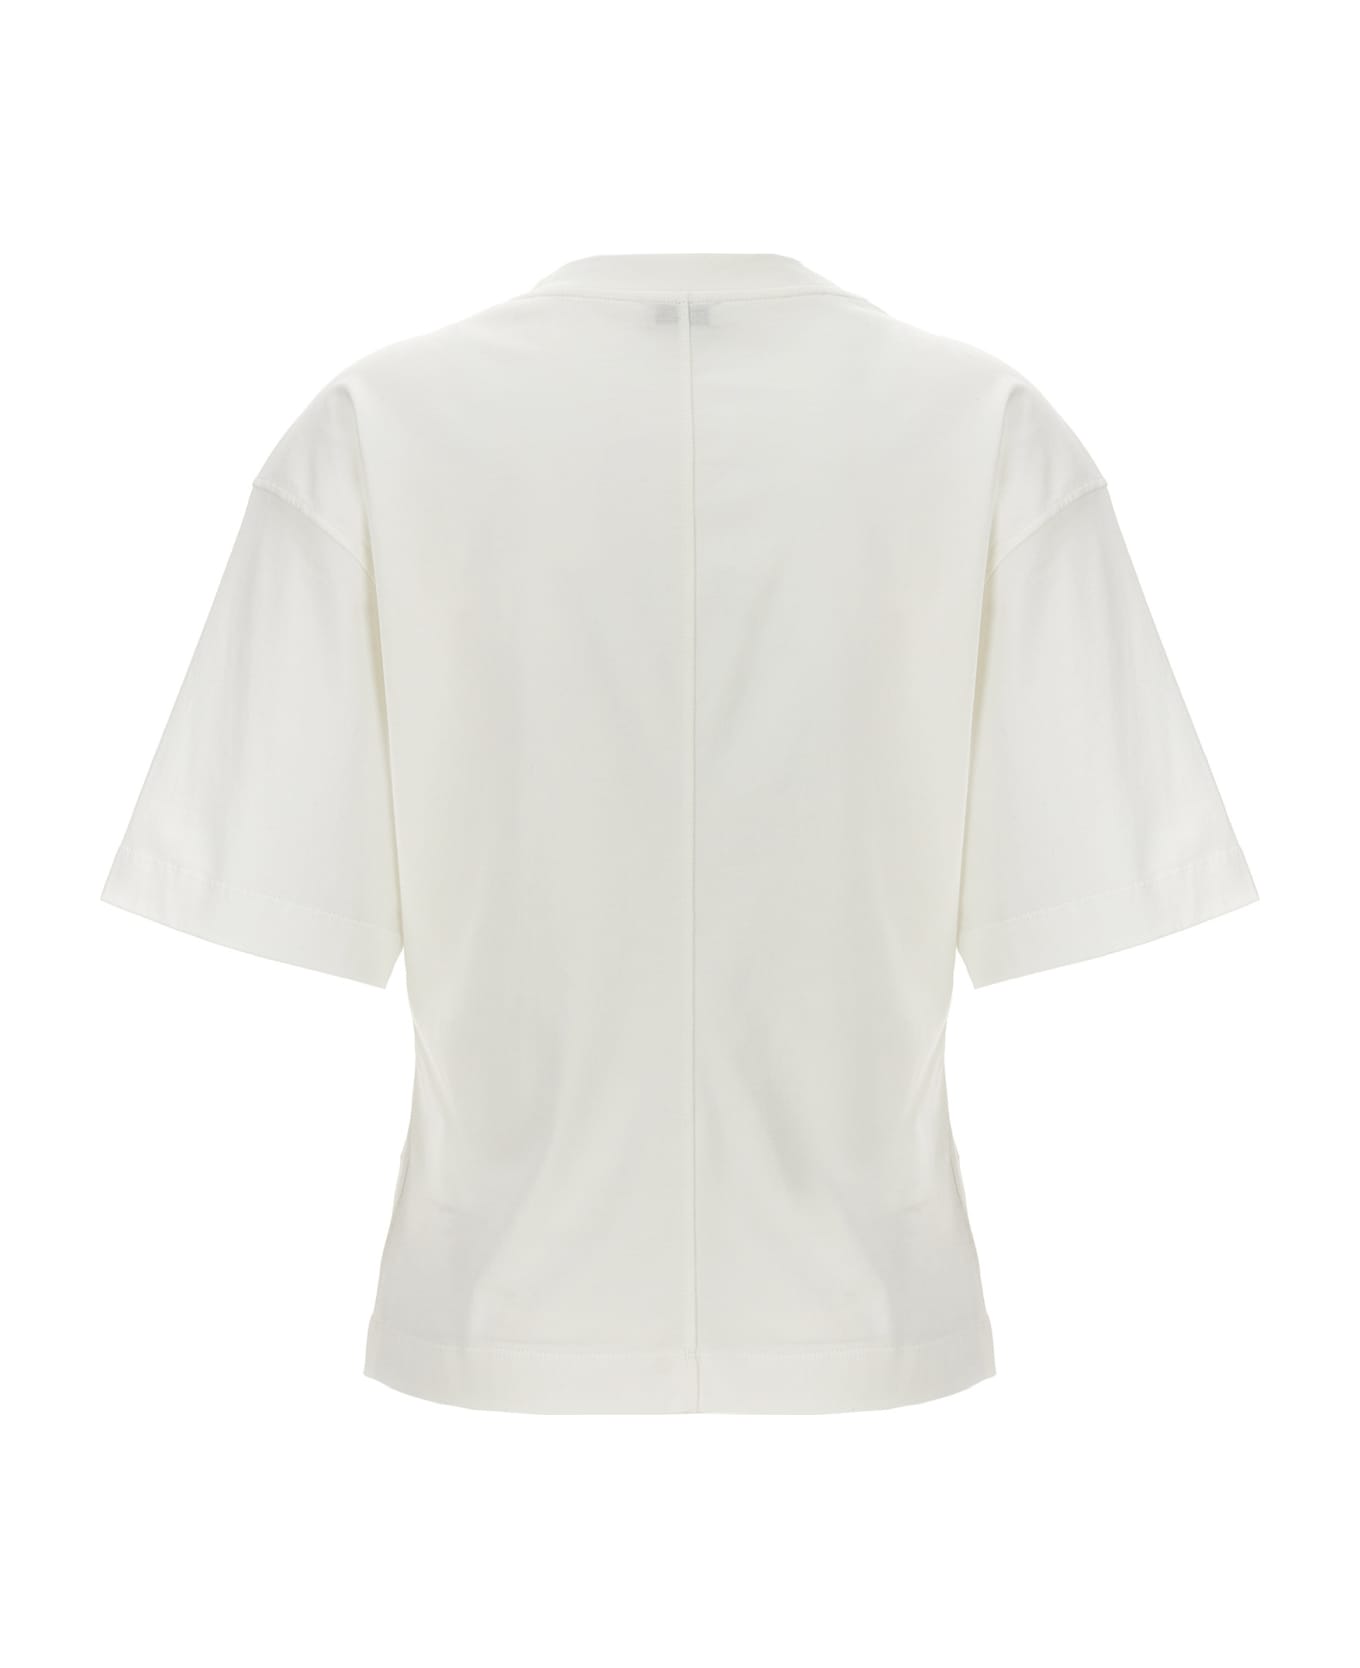 Brunello Cucinelli Round Neck Pullover - White Tシャツ